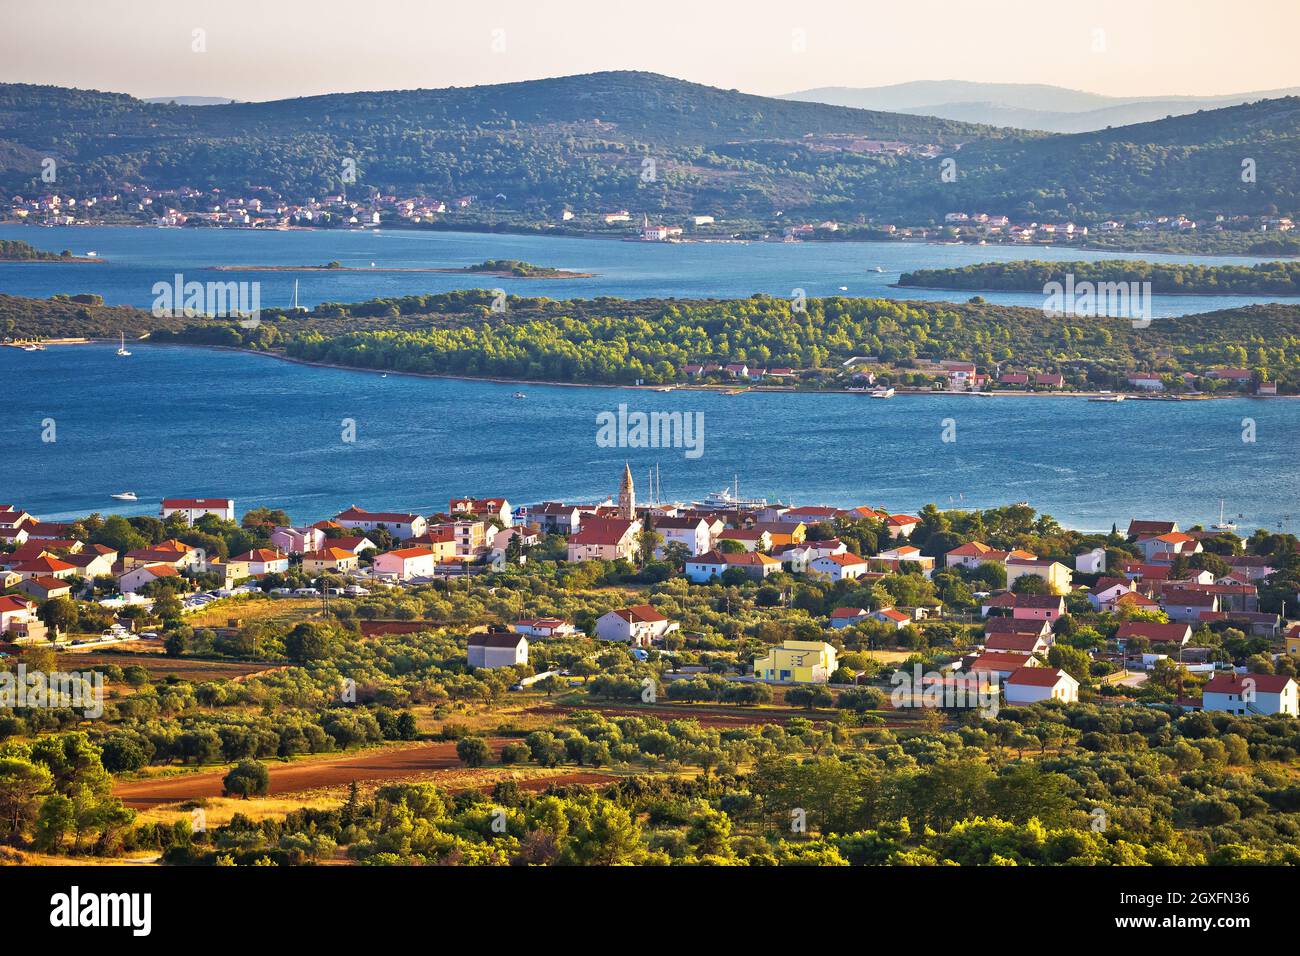 Village de Turanj et île de Pasman vue panoramique sur l'archipel, région de Dalmatie en Croatie Banque D'Images